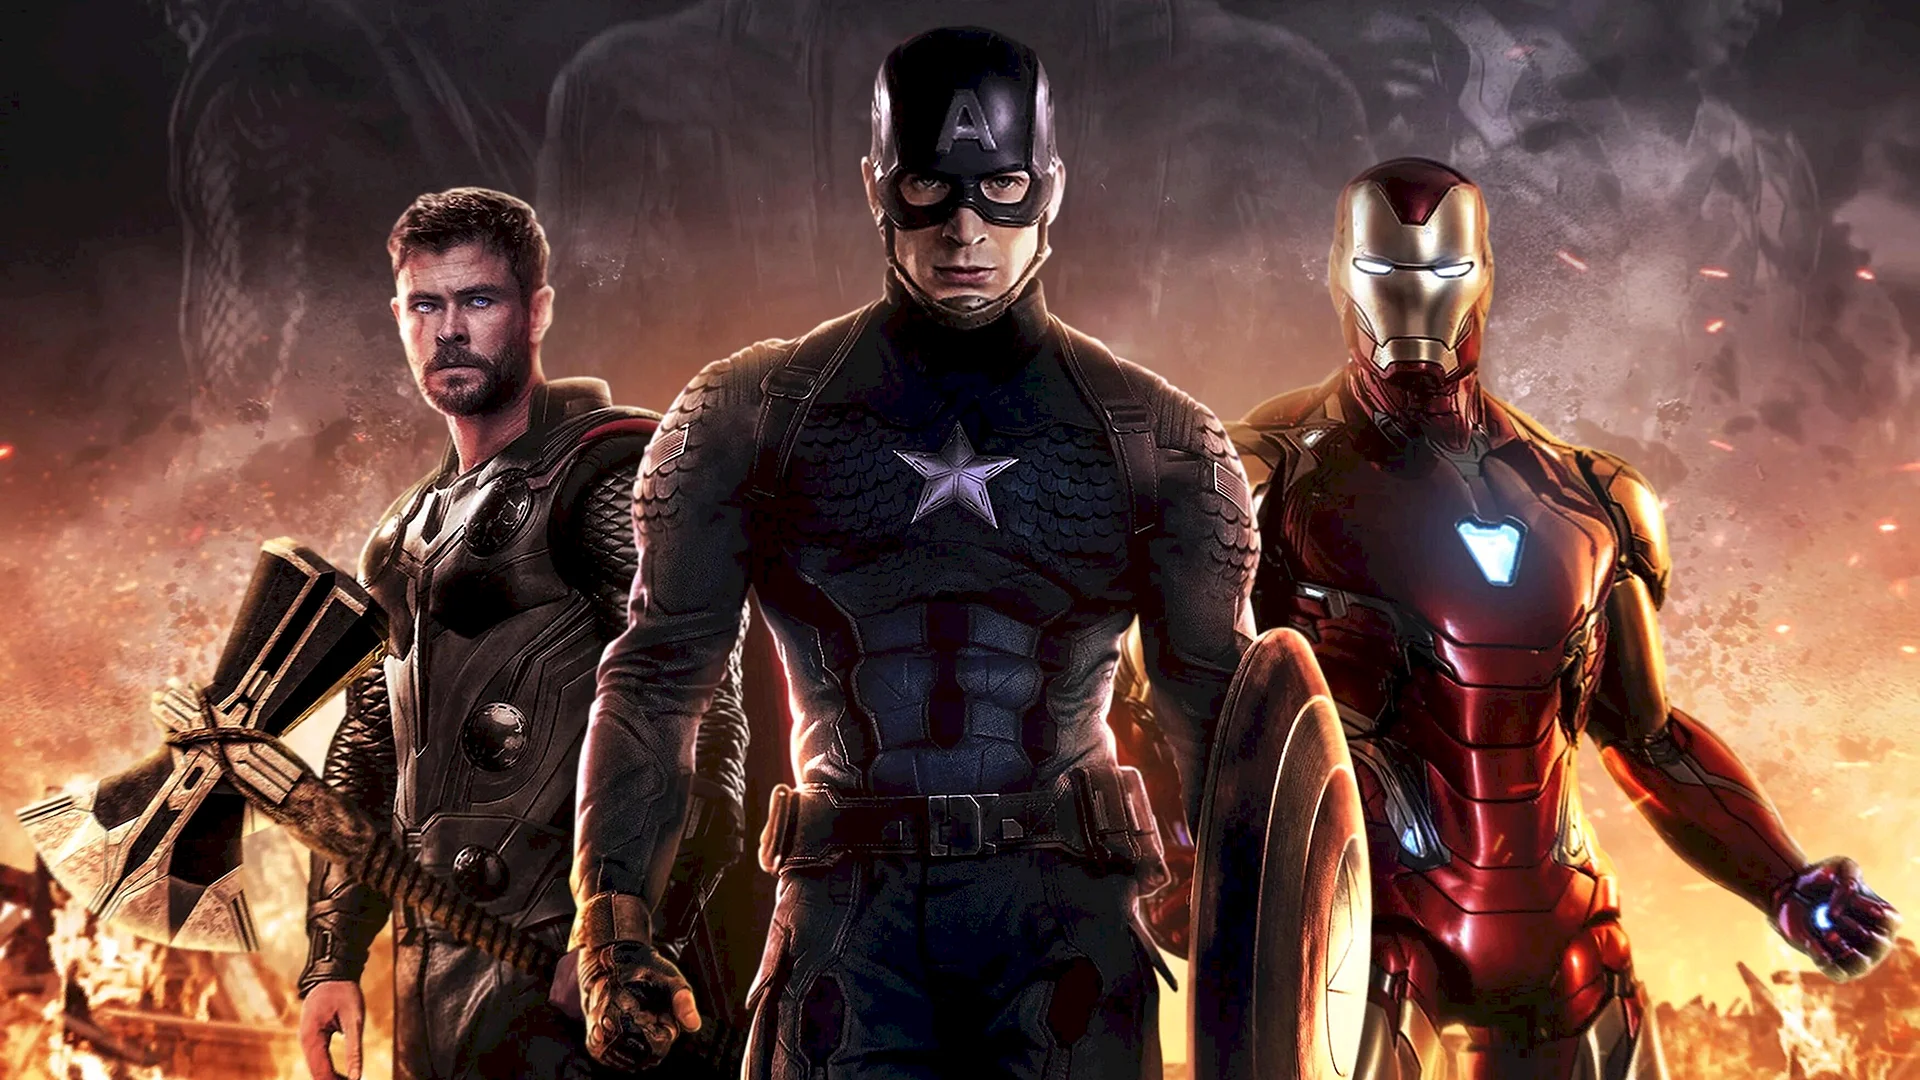 Avengers Endgame Captain America Wallpaper